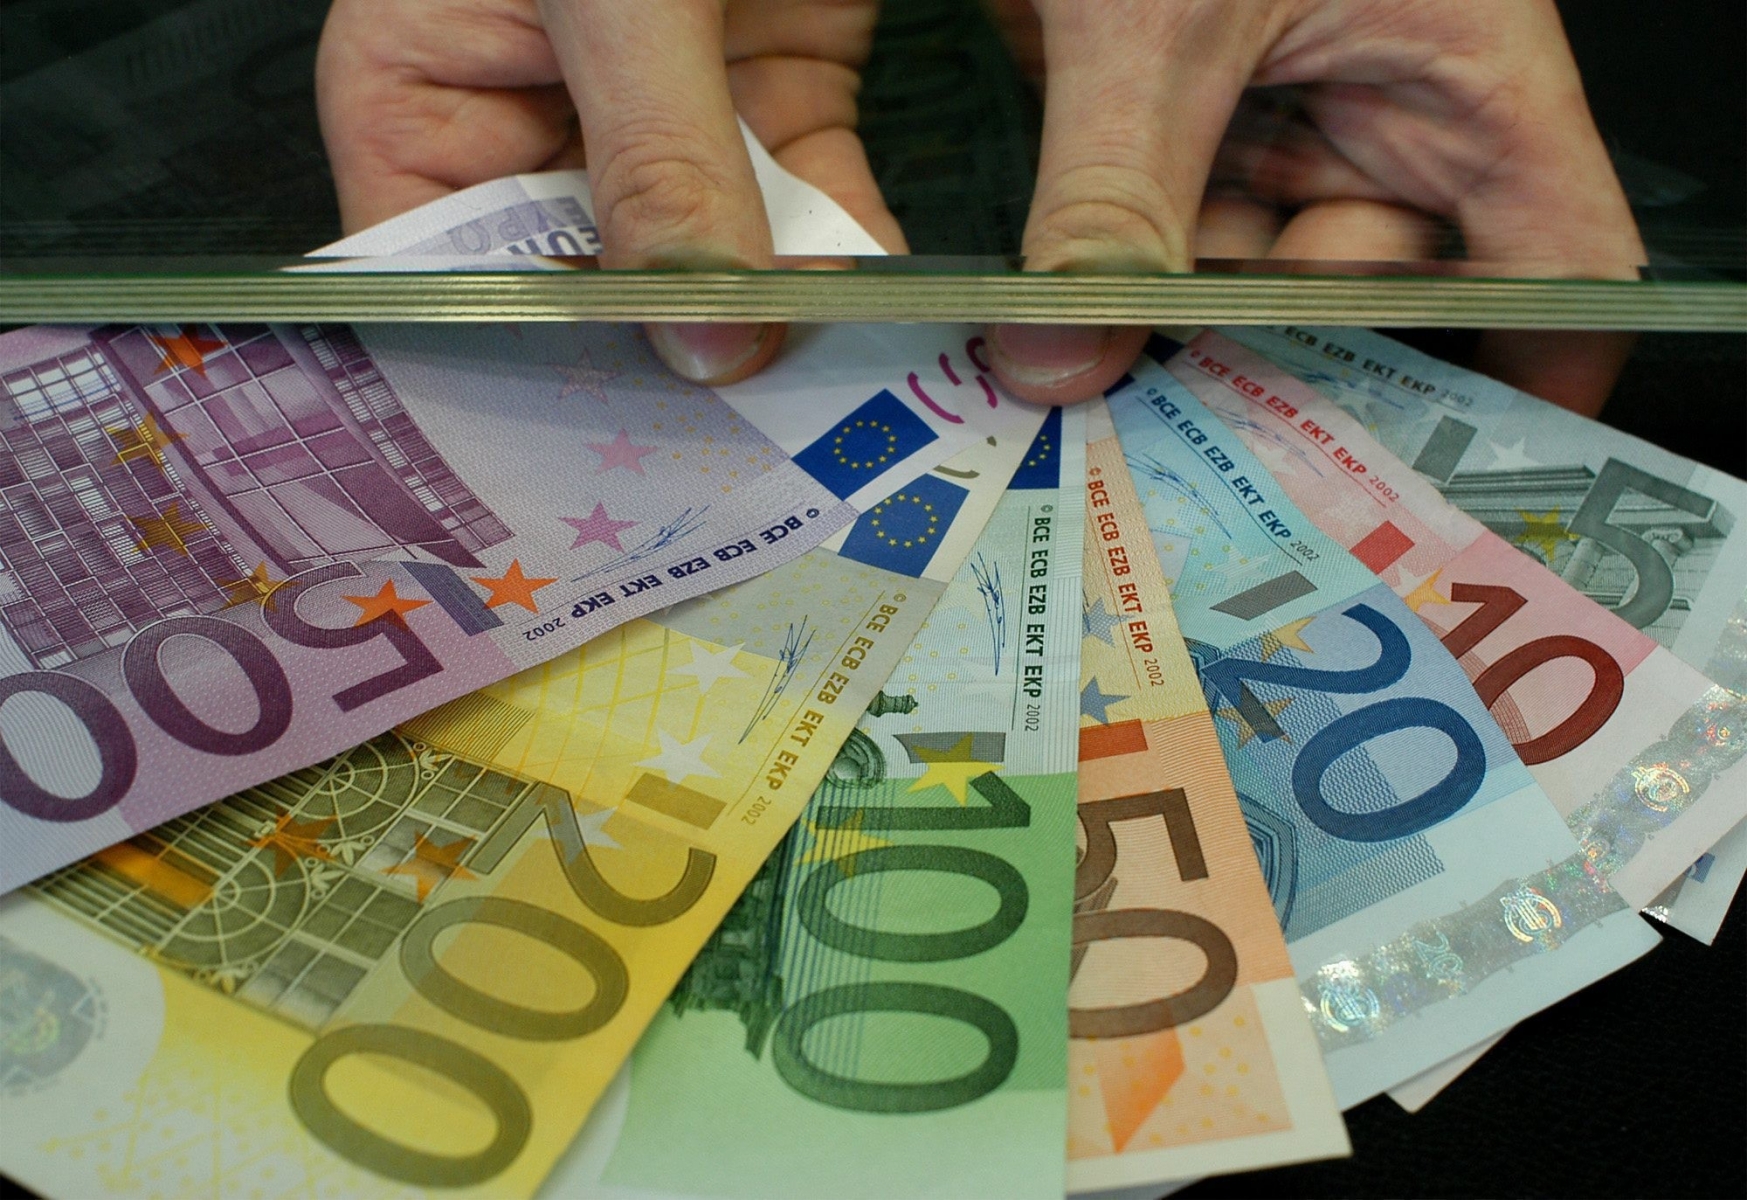 THEMENBILD --- Ein Mitarbeiter einer Geldwechselstube zeigt Euro-Scheine in Frankfurt am 23. Mai 2003. Der Traum vom faelschungssicheren Euro ist laengst ausgetraeumt. Vor vier Jahren wurden die Banknoten als vermeintlich sicheres Bargeld unters Volk gebracht, doch heute taucht immer mehr Falschgeld auf. Nun ruestet der Euro auf. Die Europaeische Zentralbank (EZB) bereitet eine neue Banknotenserie vor, die bis 2010 auf den Markt kommen soll. Diese Scheine werden neuartige Sicherheitsmerkmale besitzen, die den Faelschern das Leben schwer machen. Unter hoechster Geheimhaltungsstufe hat die EZB begonnen, neue Tricks auszutuefteln. (KEYSTONE/AP Photo/Udo Weitz) EUROPA NEUE EURO BANKNOTEN